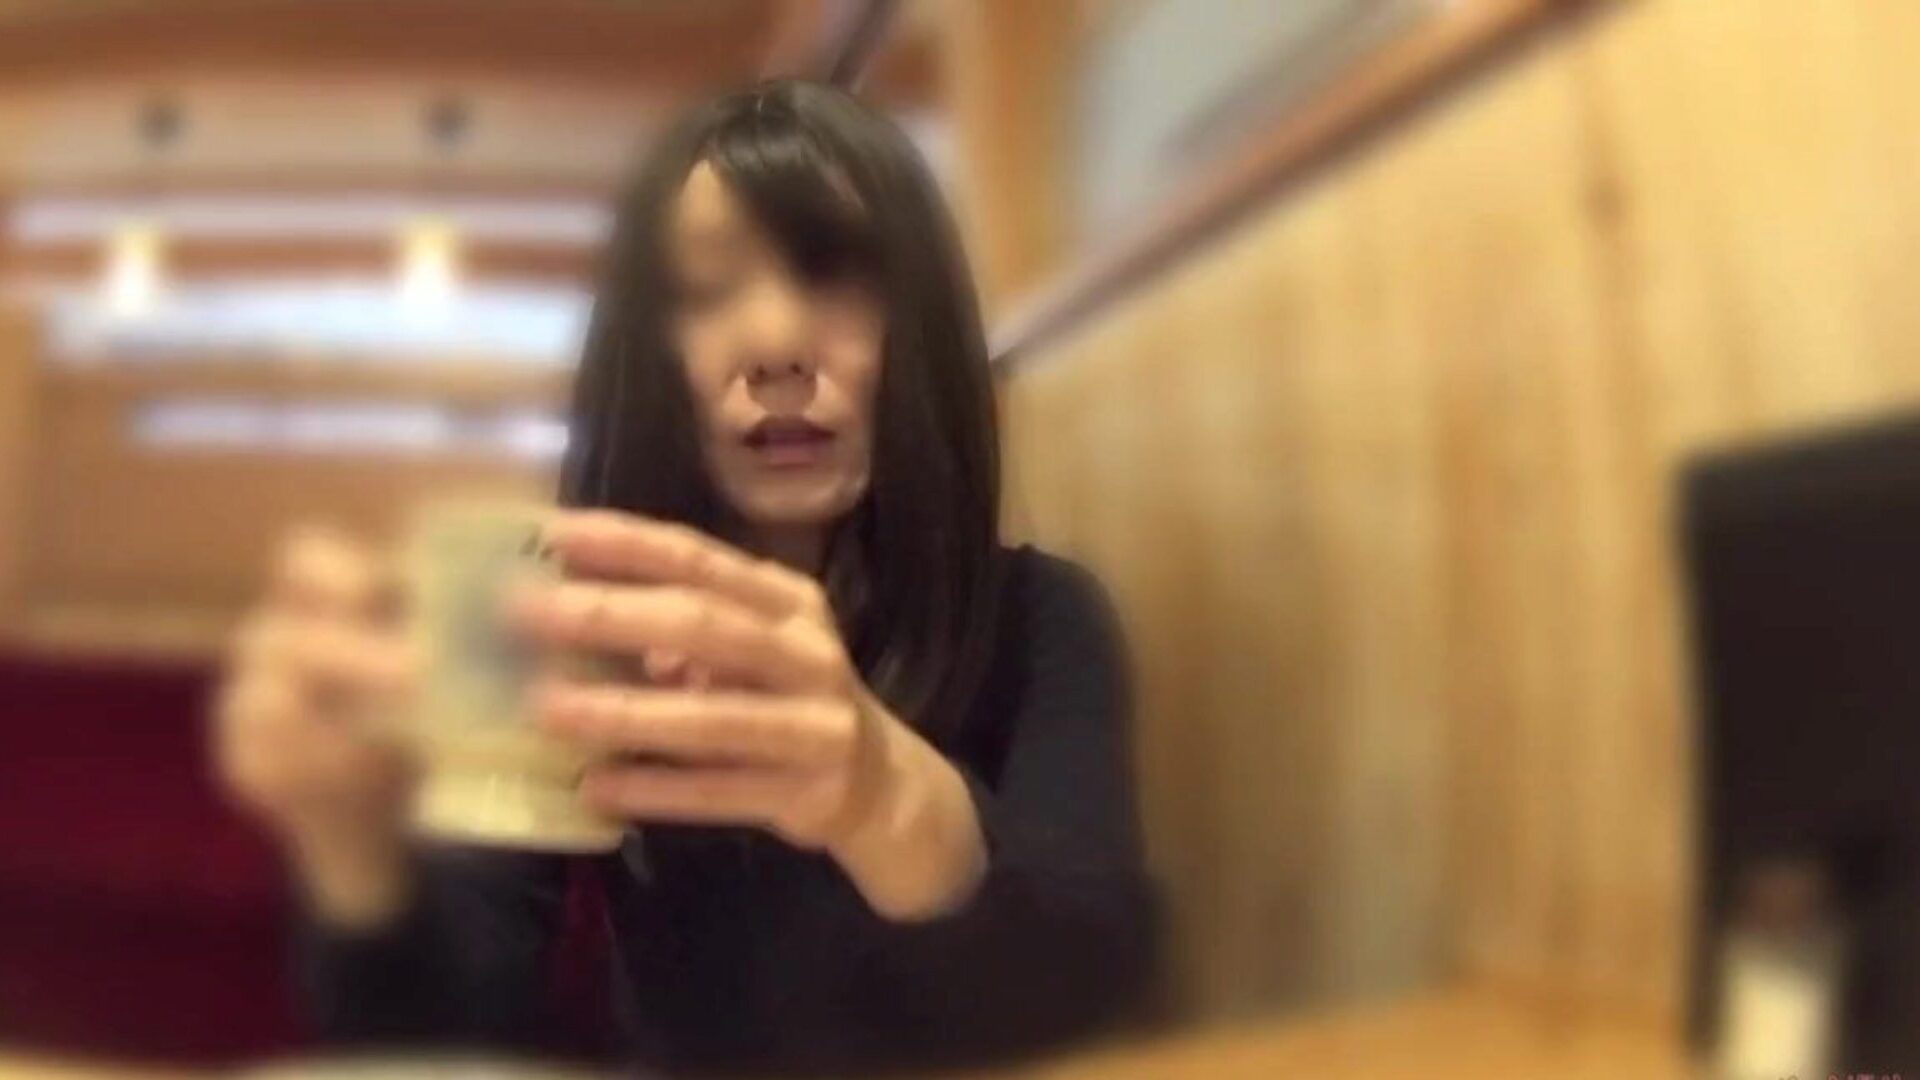 hanrejskone tog sine trusser af i caféen: gratis porno 60 se hanrejskone tog sine trusser af i caféen video på xhamster - det ultimative væld af gratis asiatiske japanske HD-videoer med gonzo porno